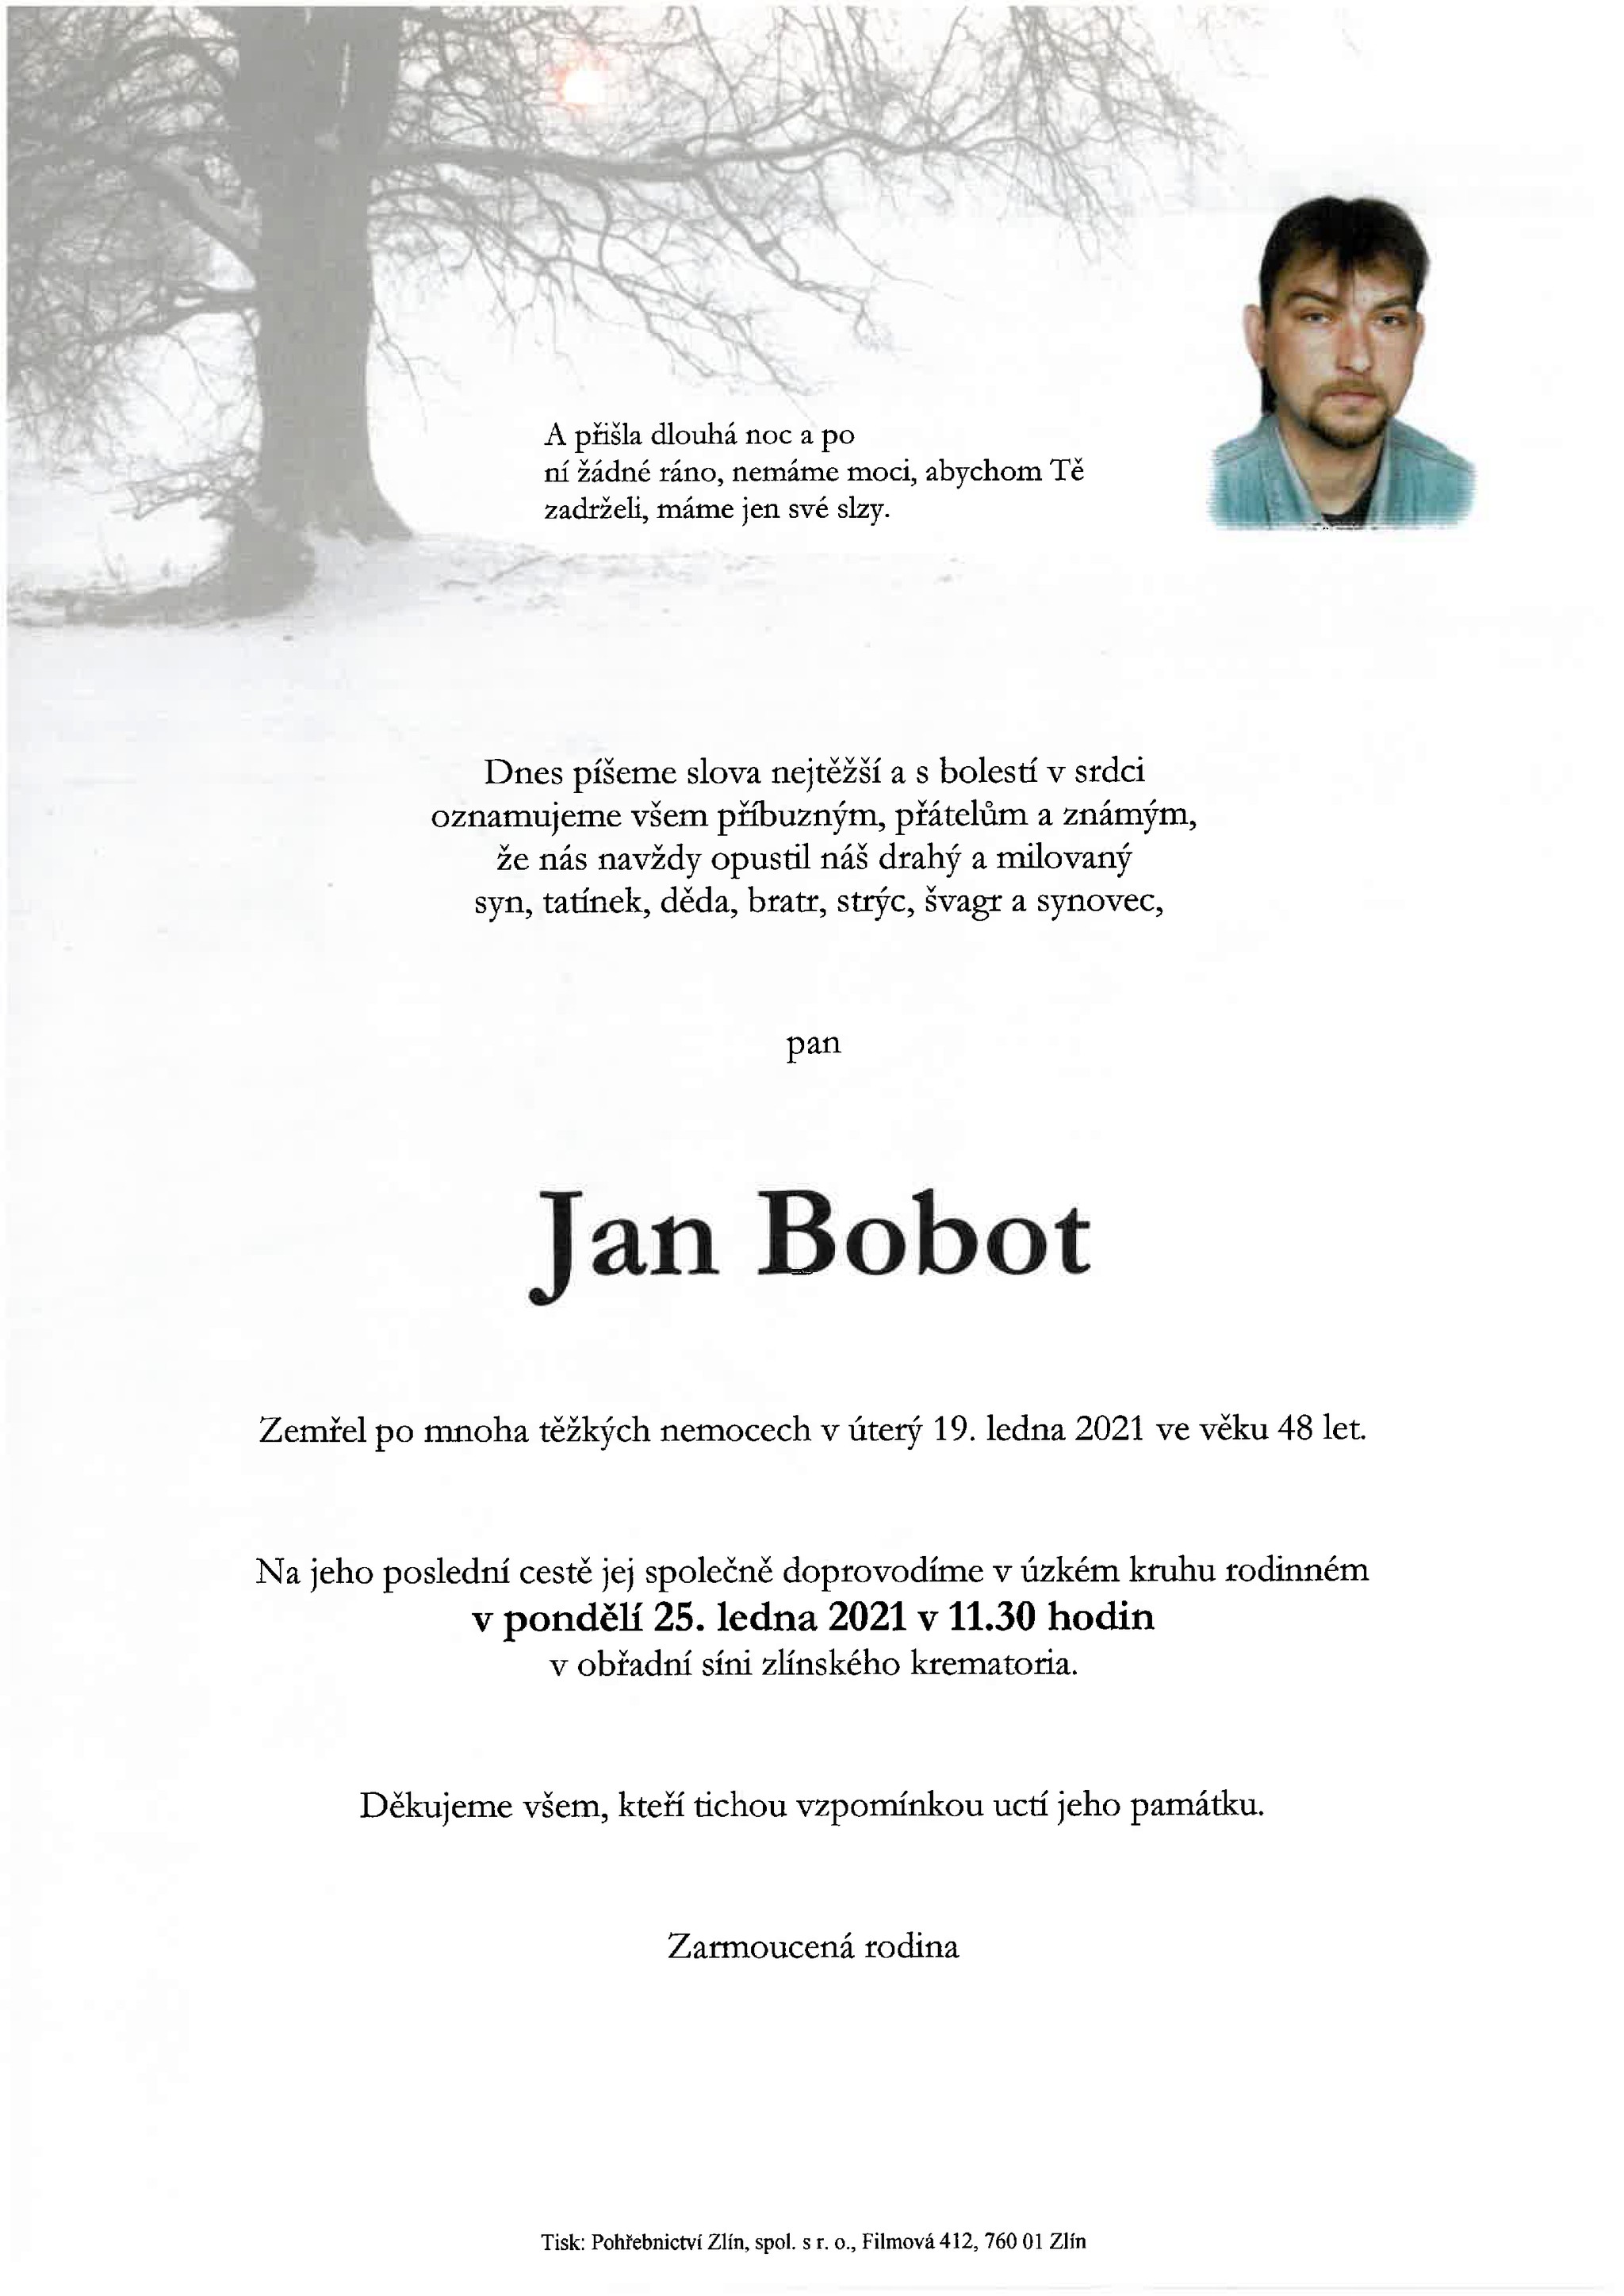 Jan Bobot